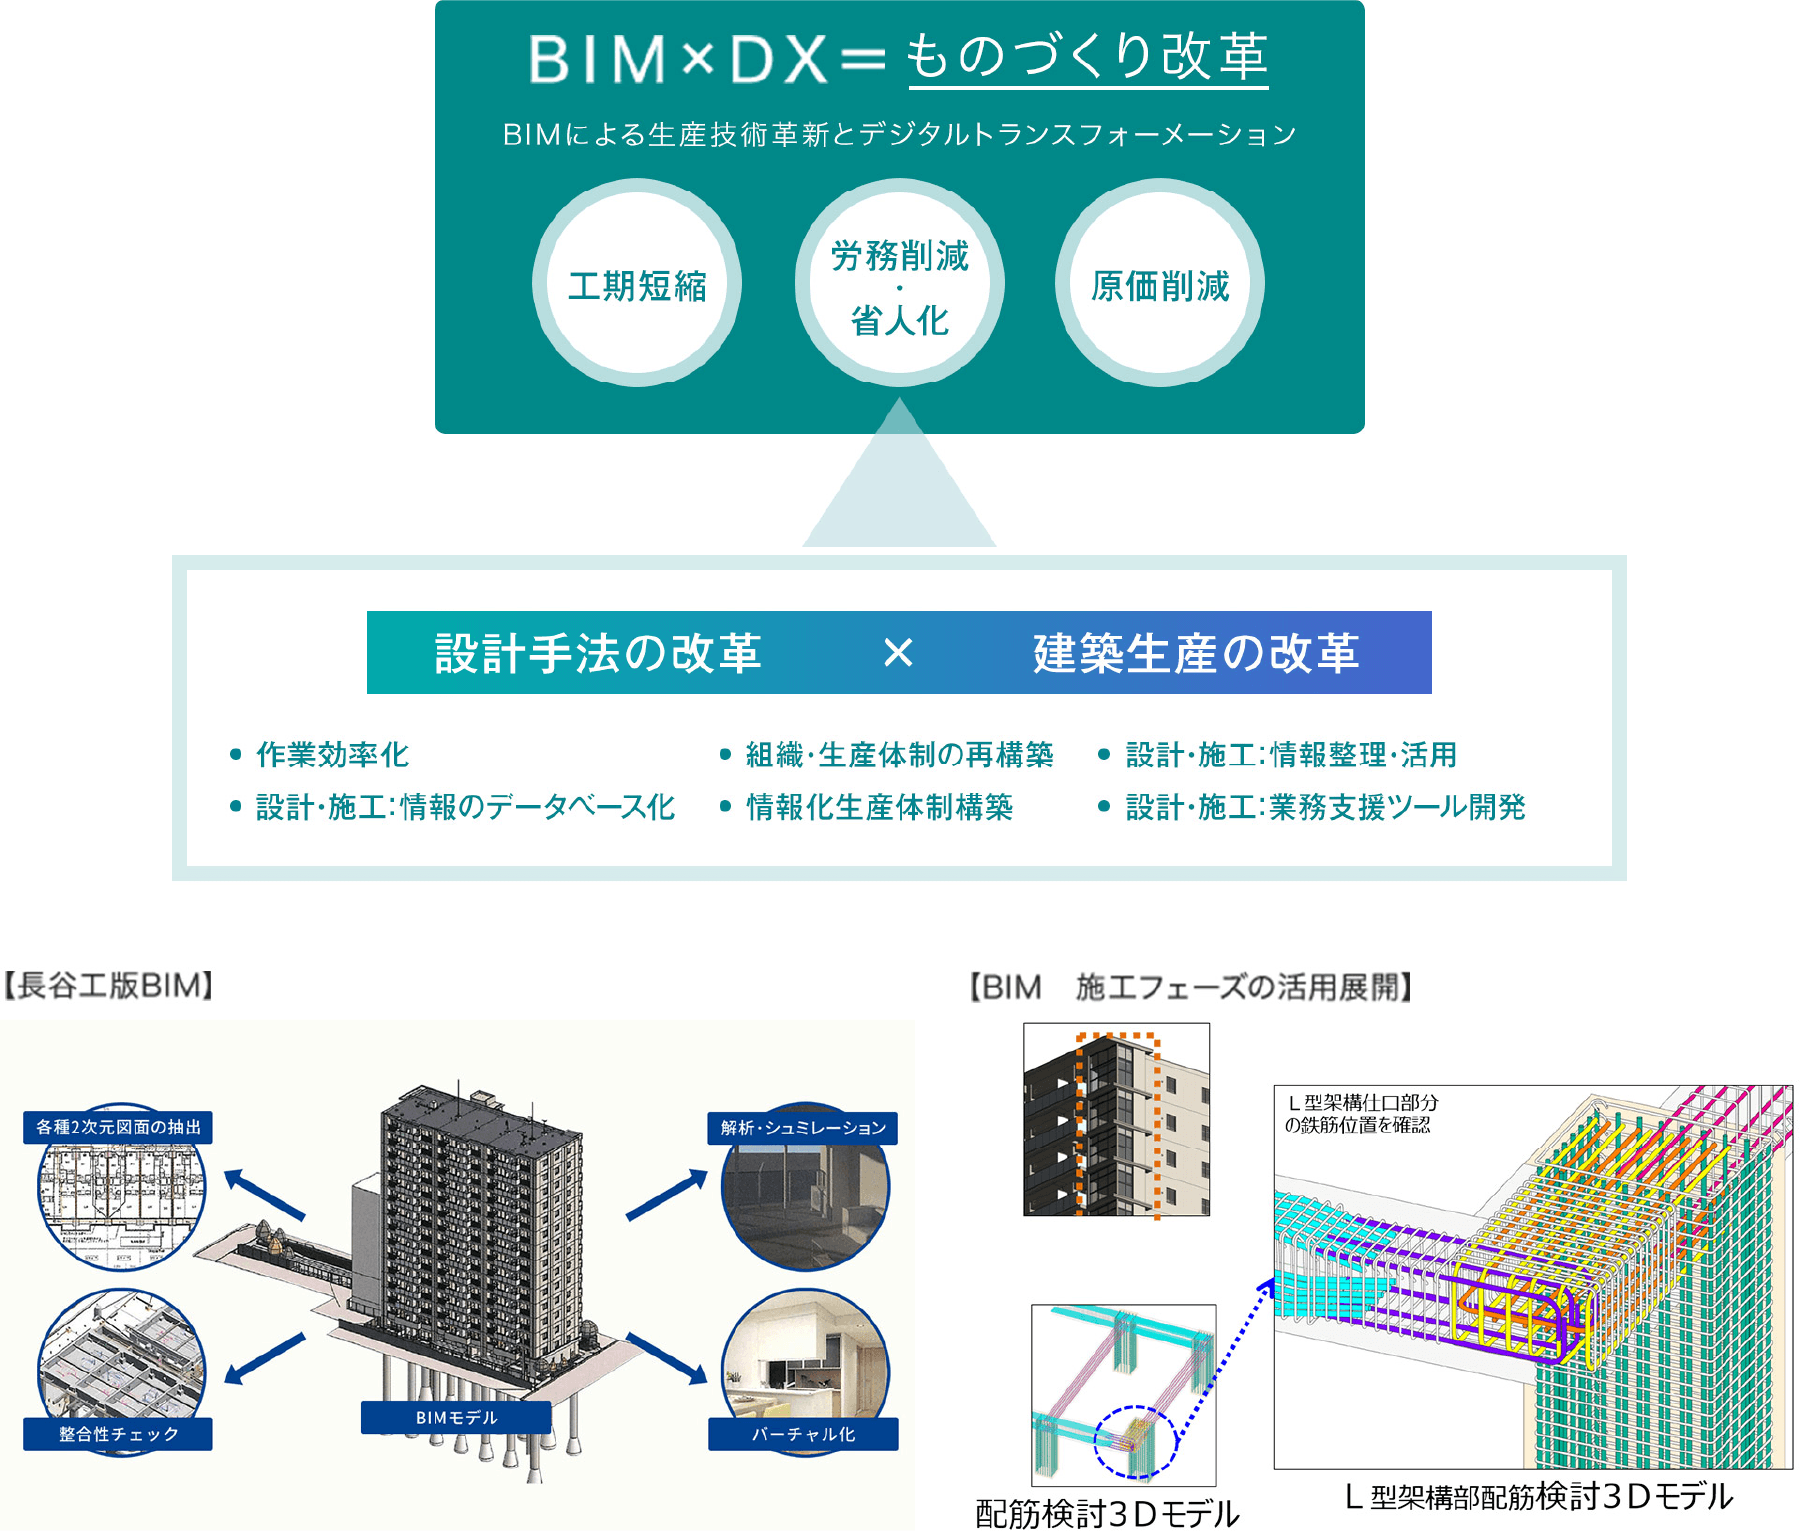 BIMxDX=ものづくり改革